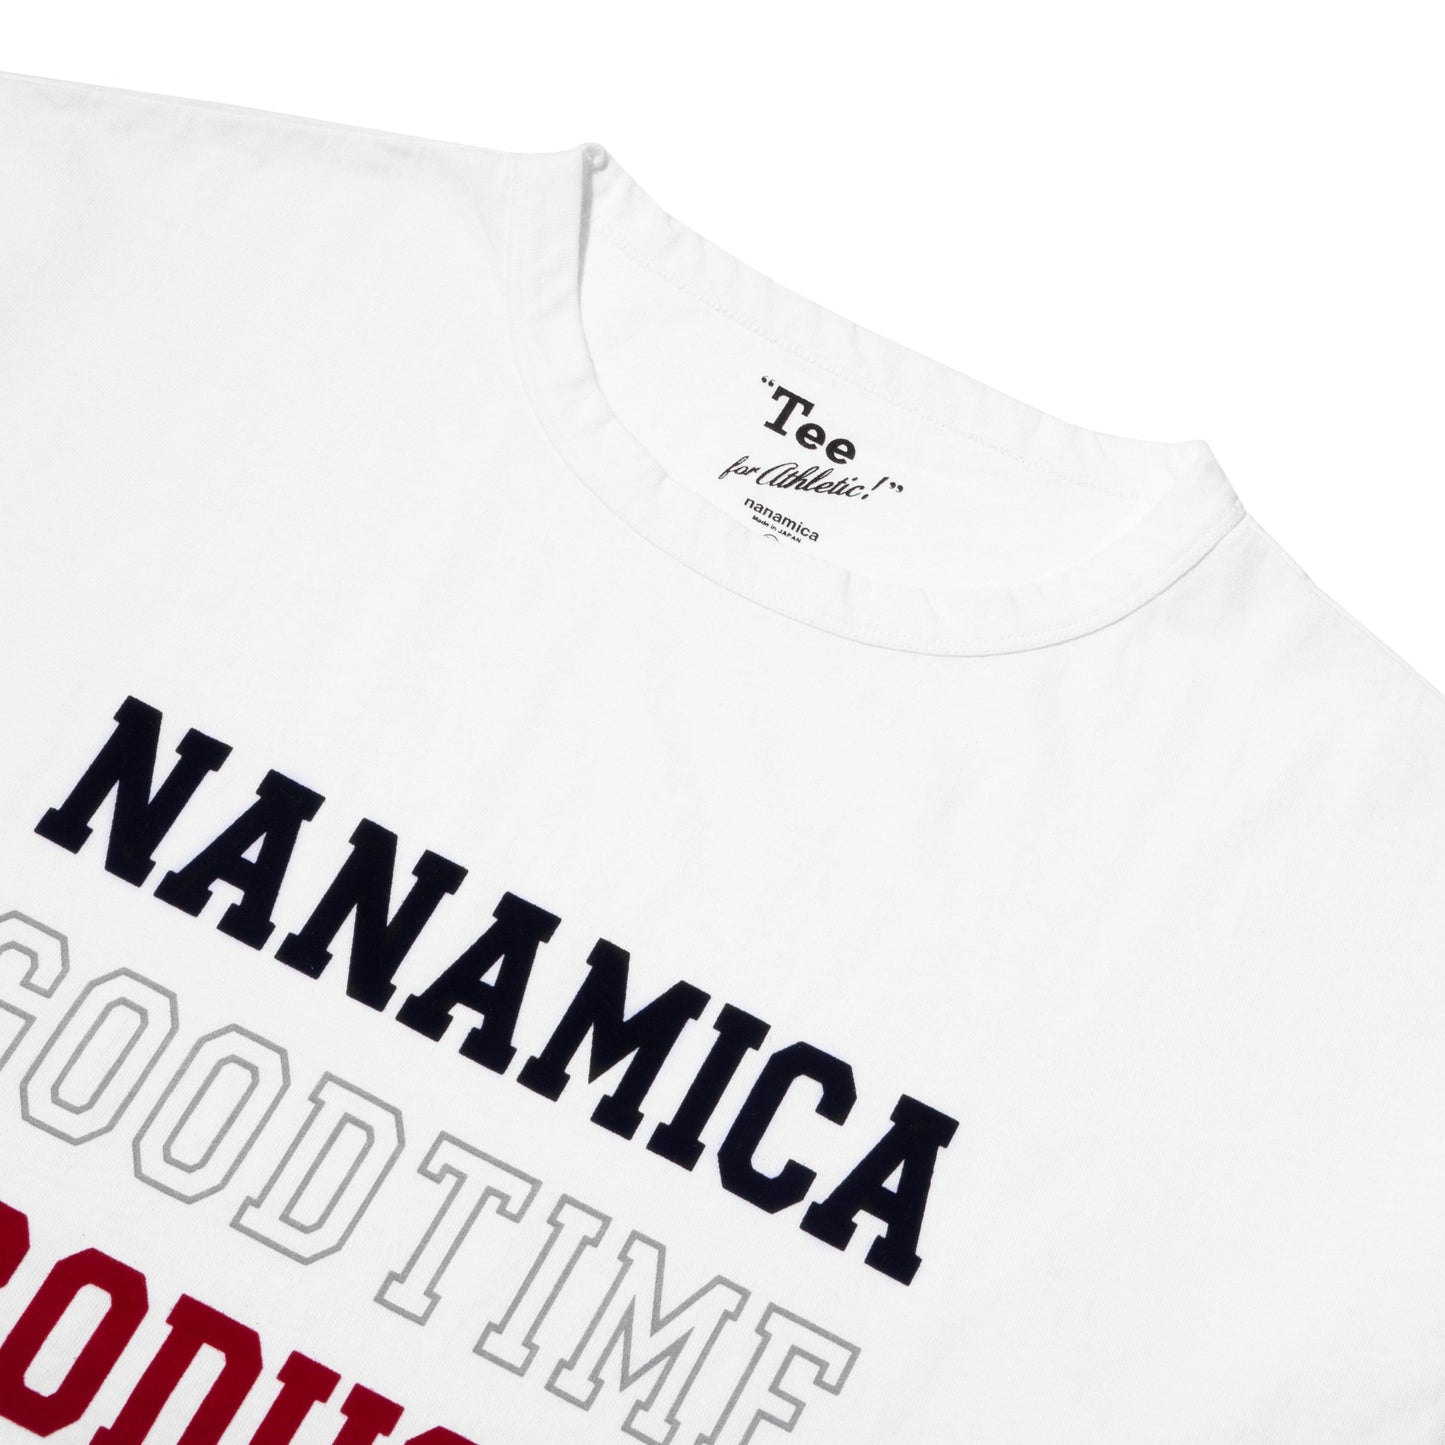 nanamica T-Shirts NANAMICAN GRAPHIC TEE